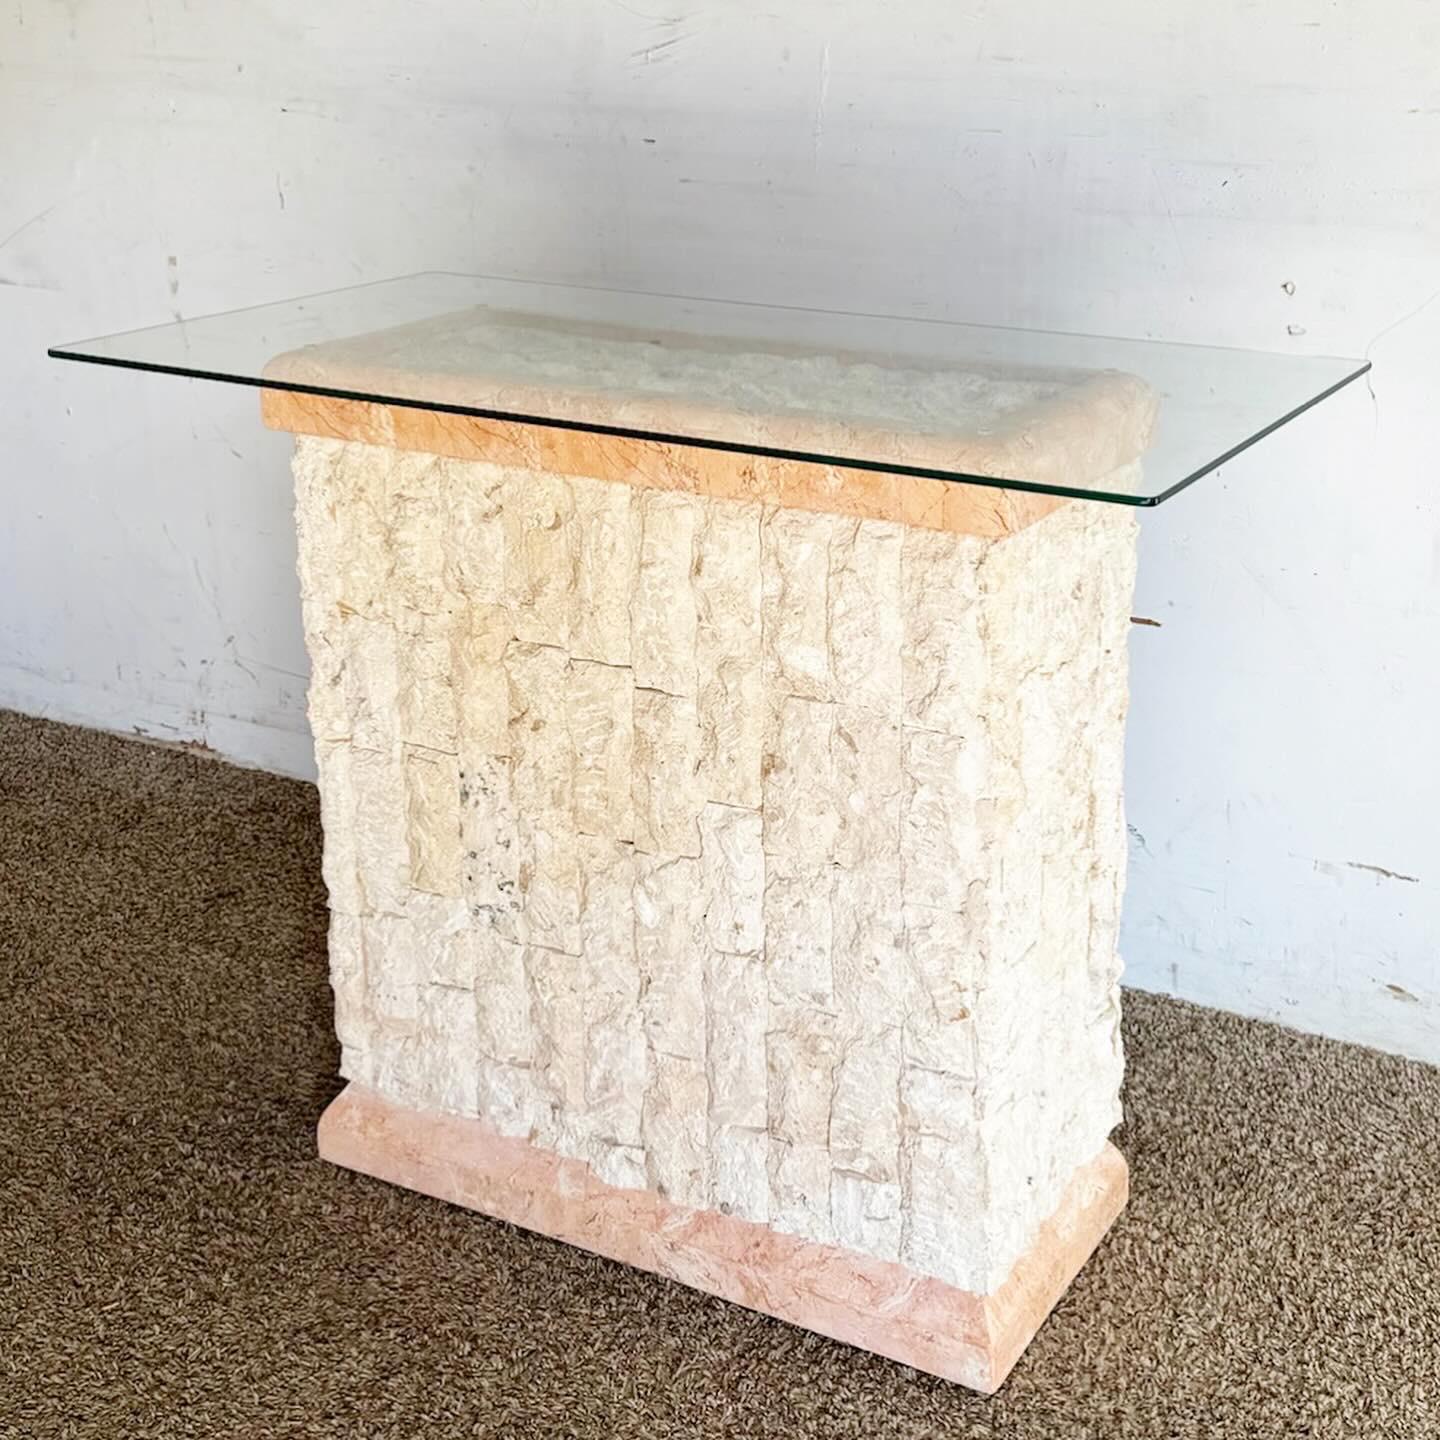 Der Postmodern Pink and Beige Tessellated Stone Console Table ist eine perfekte Mischung aus Kunst und Funktionalität. Der mosaikartige Steinsockel in Rosa und Beige sorgt für ein fesselndes Muster und eine schöne Struktur. Die schlanke, rechteckige